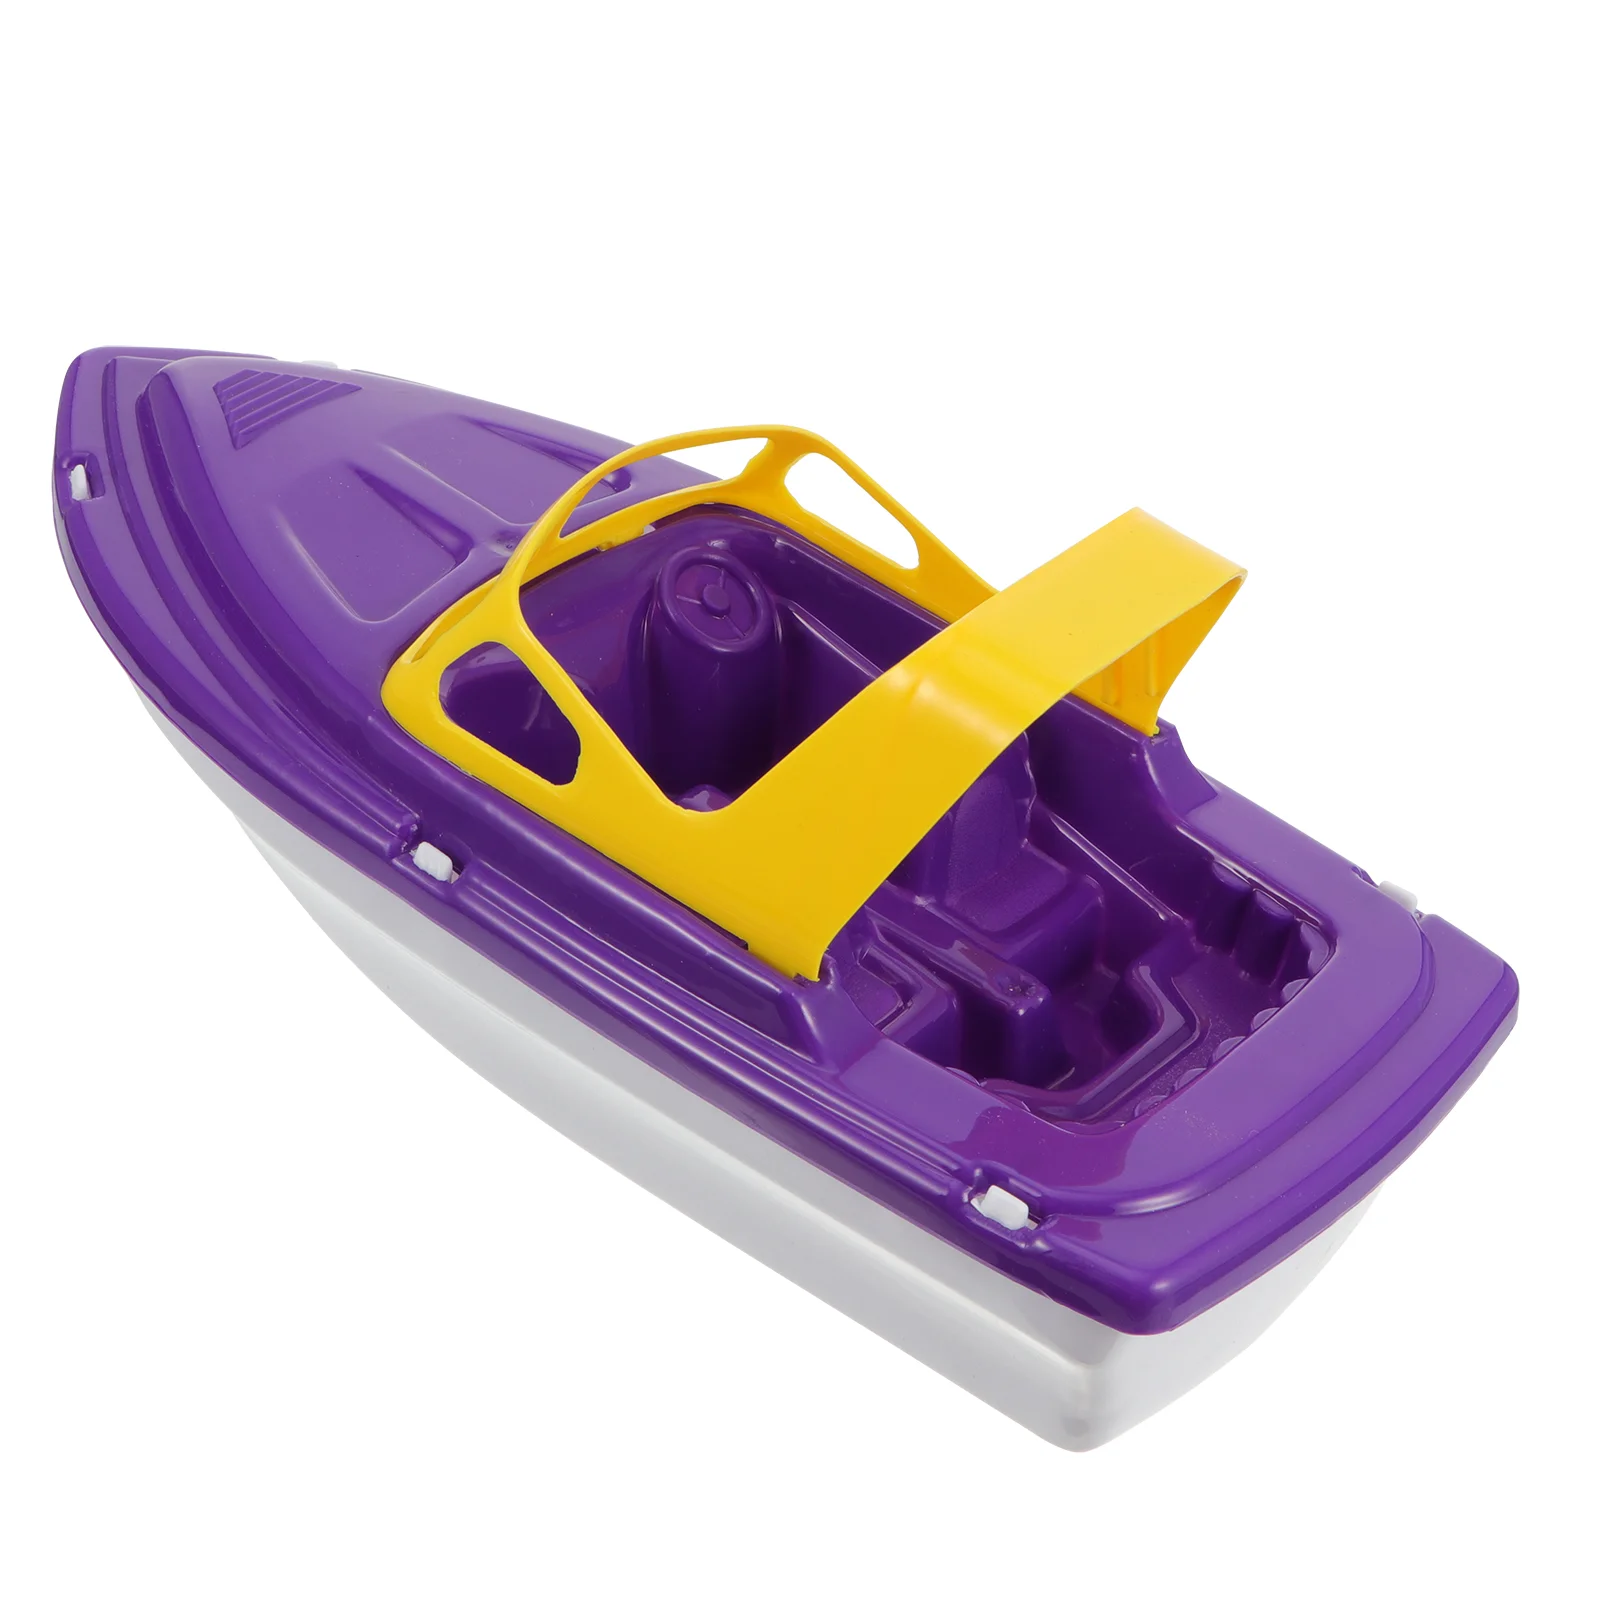 

Детская душевая кабина Speedboat, ванночка для игр, для парусных игр, пластиковые лодки, яхта